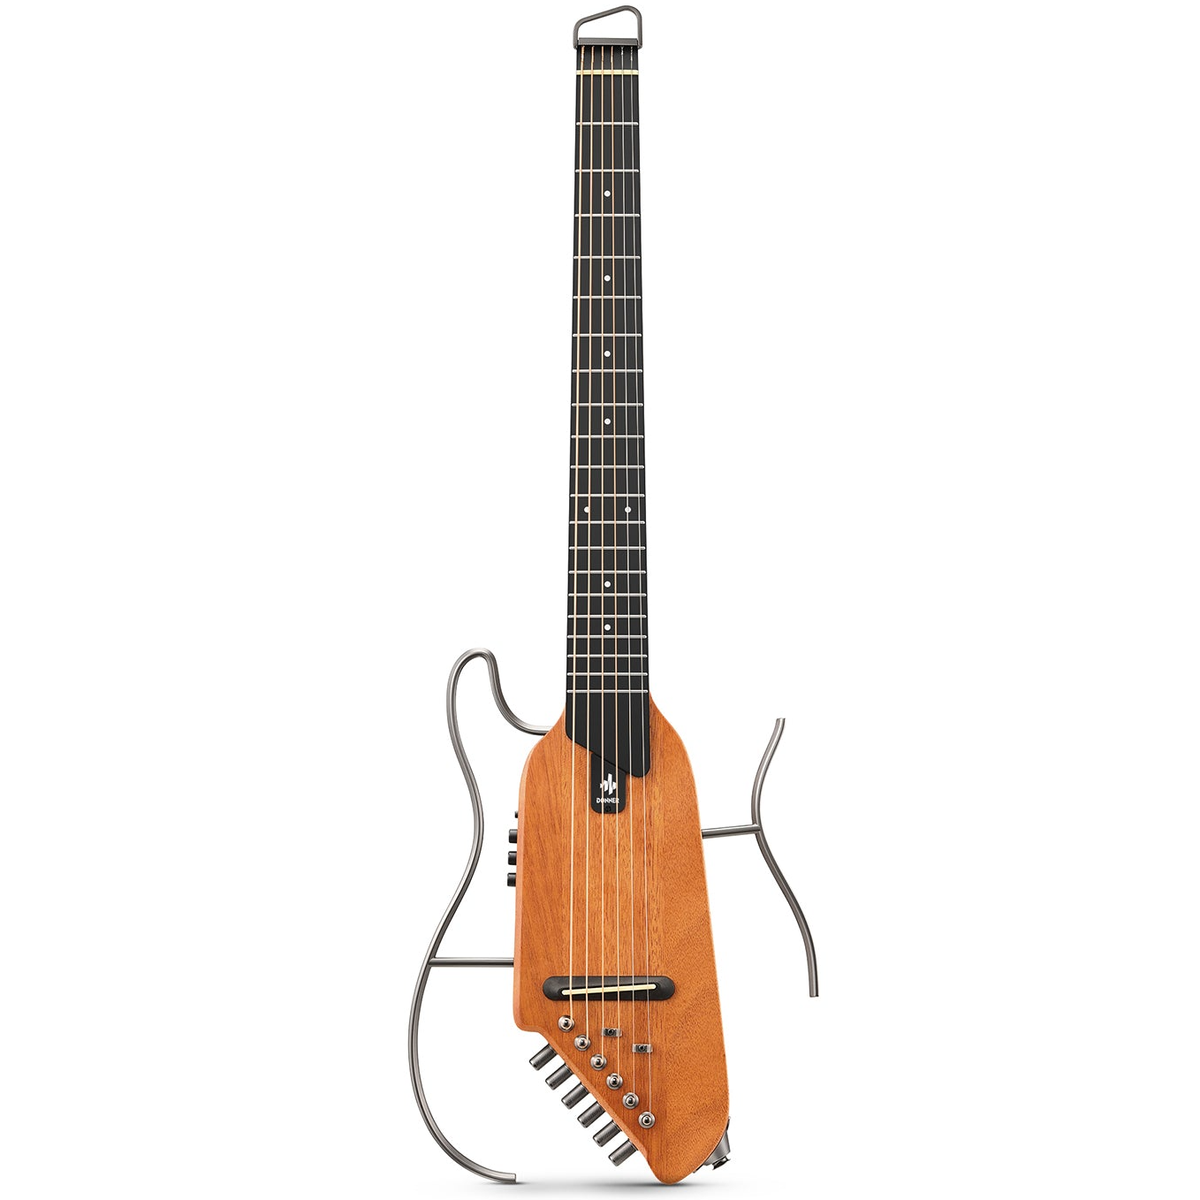 Donner EC1781 HUSH-I Silent Guitar, Mahogany, Natural